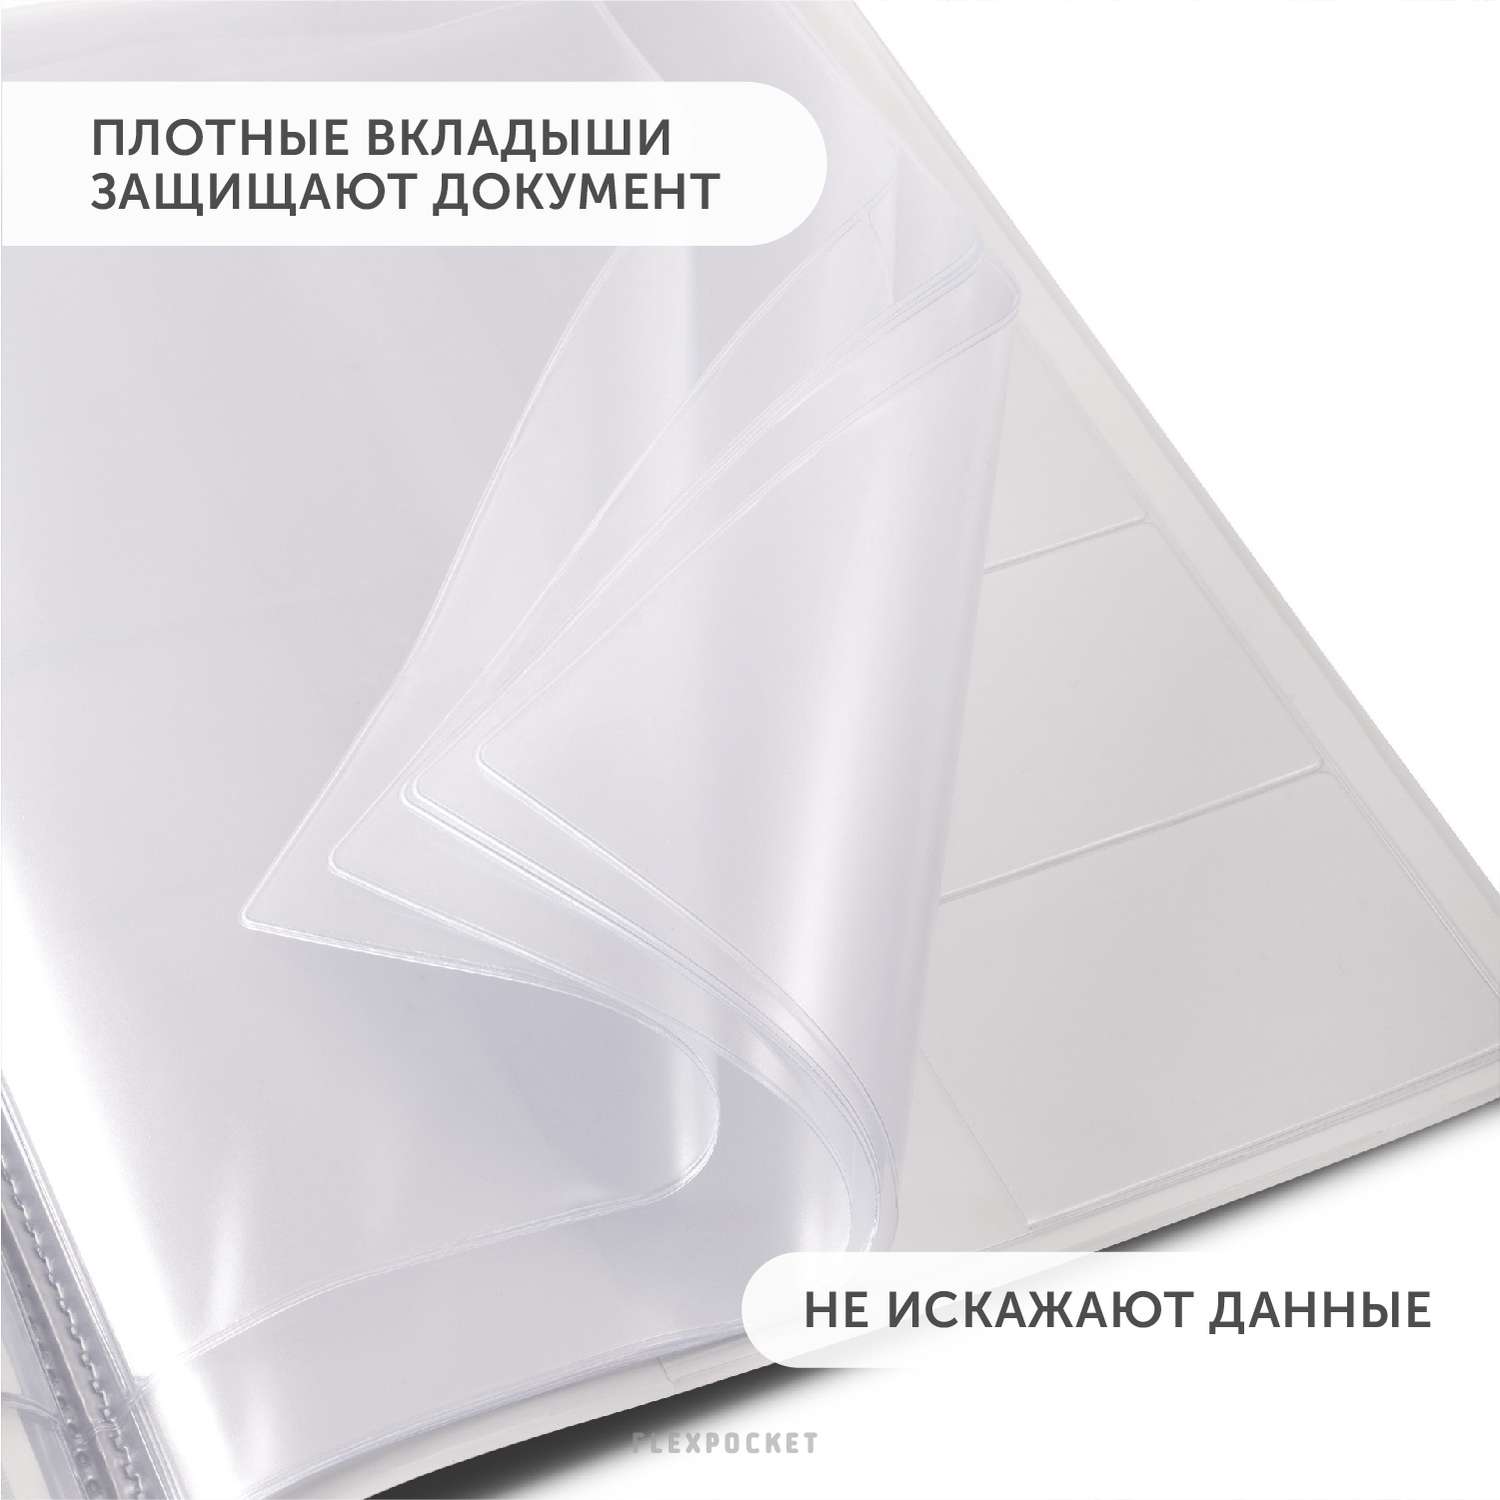 Папка для семейных документов Flexpocket из ПВХ в подарочной упаковке формат А4 - фото 6